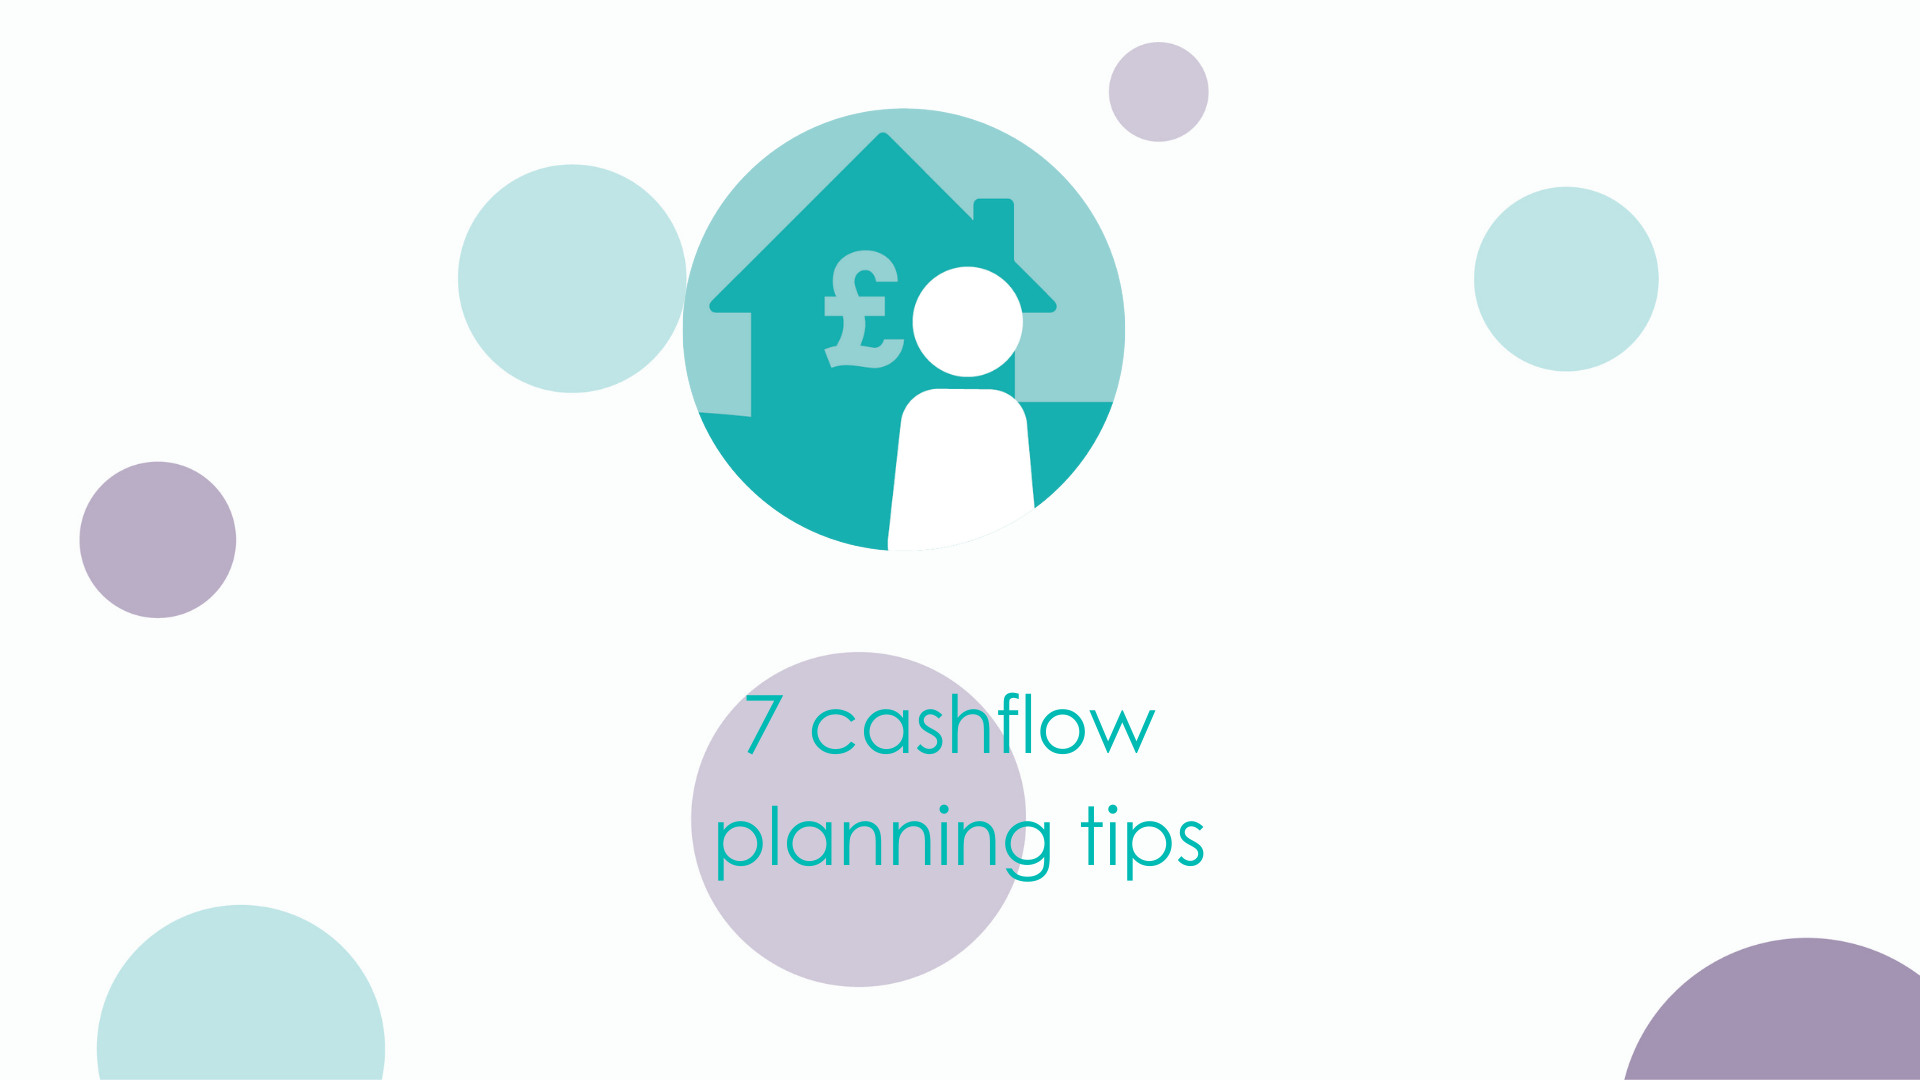 7 cashflow planning tips